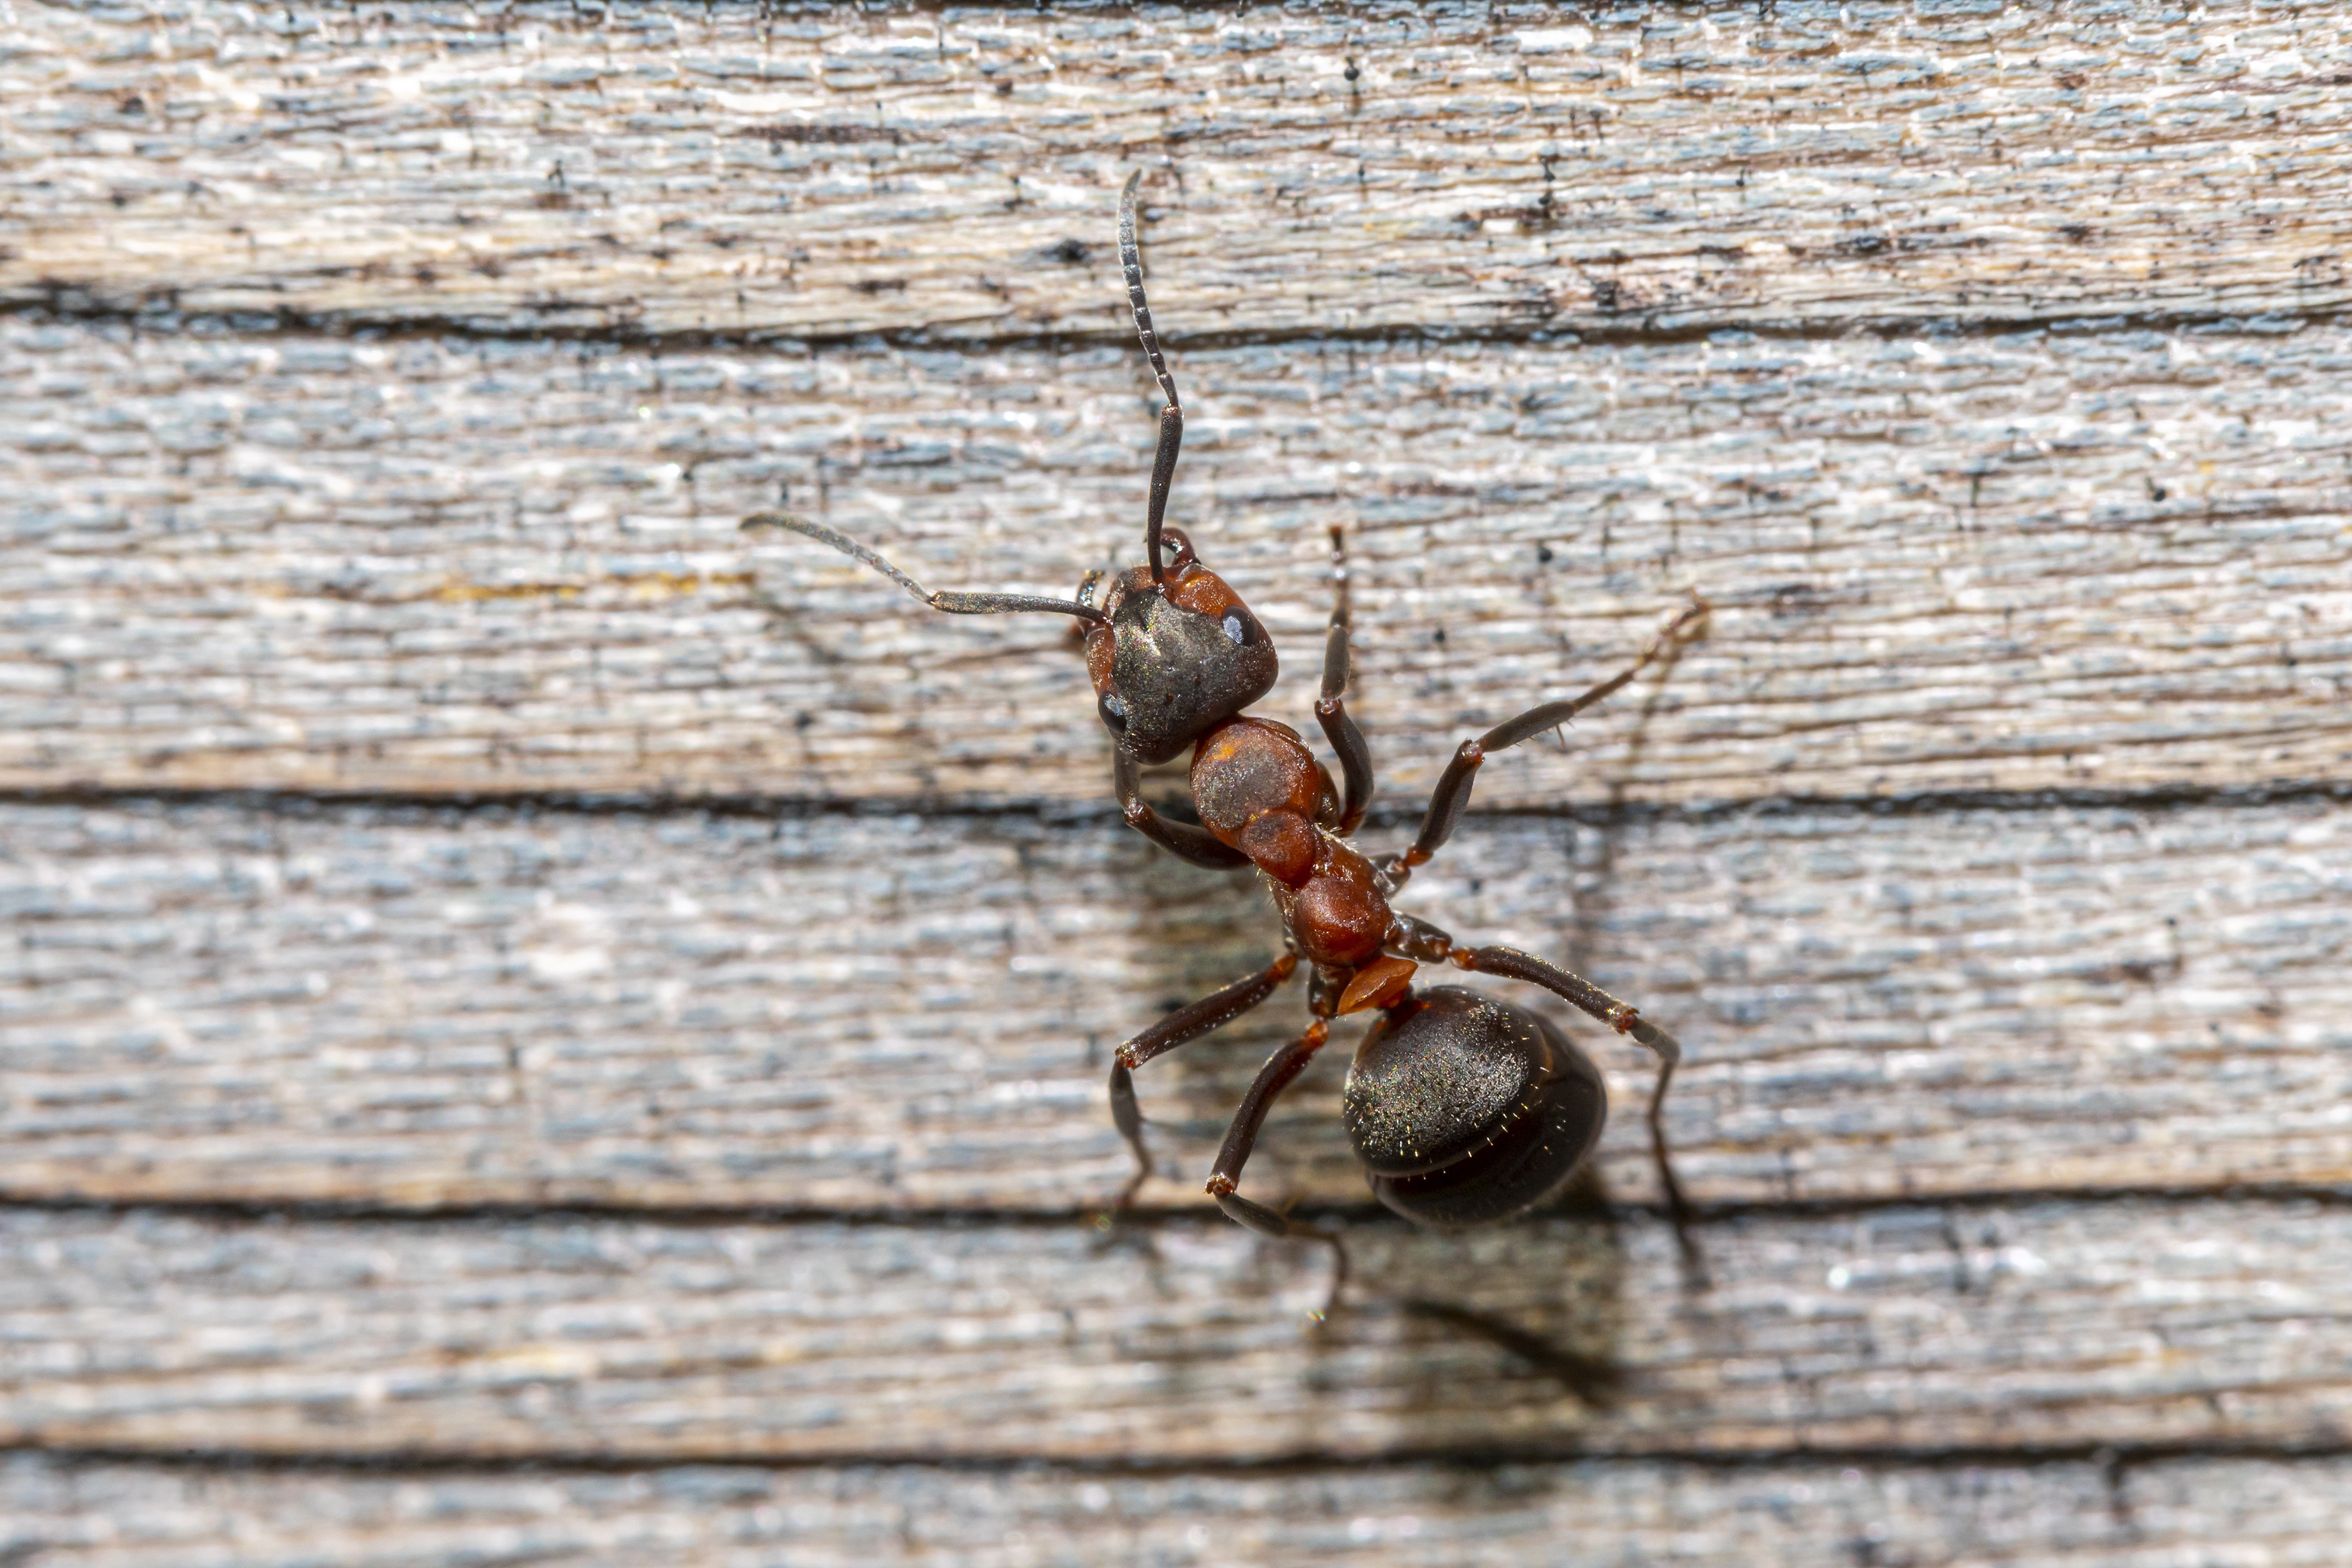 Картинка Муравьи Насекомые red forest ant Животные Крупным планом 4000x2667 насекомое вблизи животное